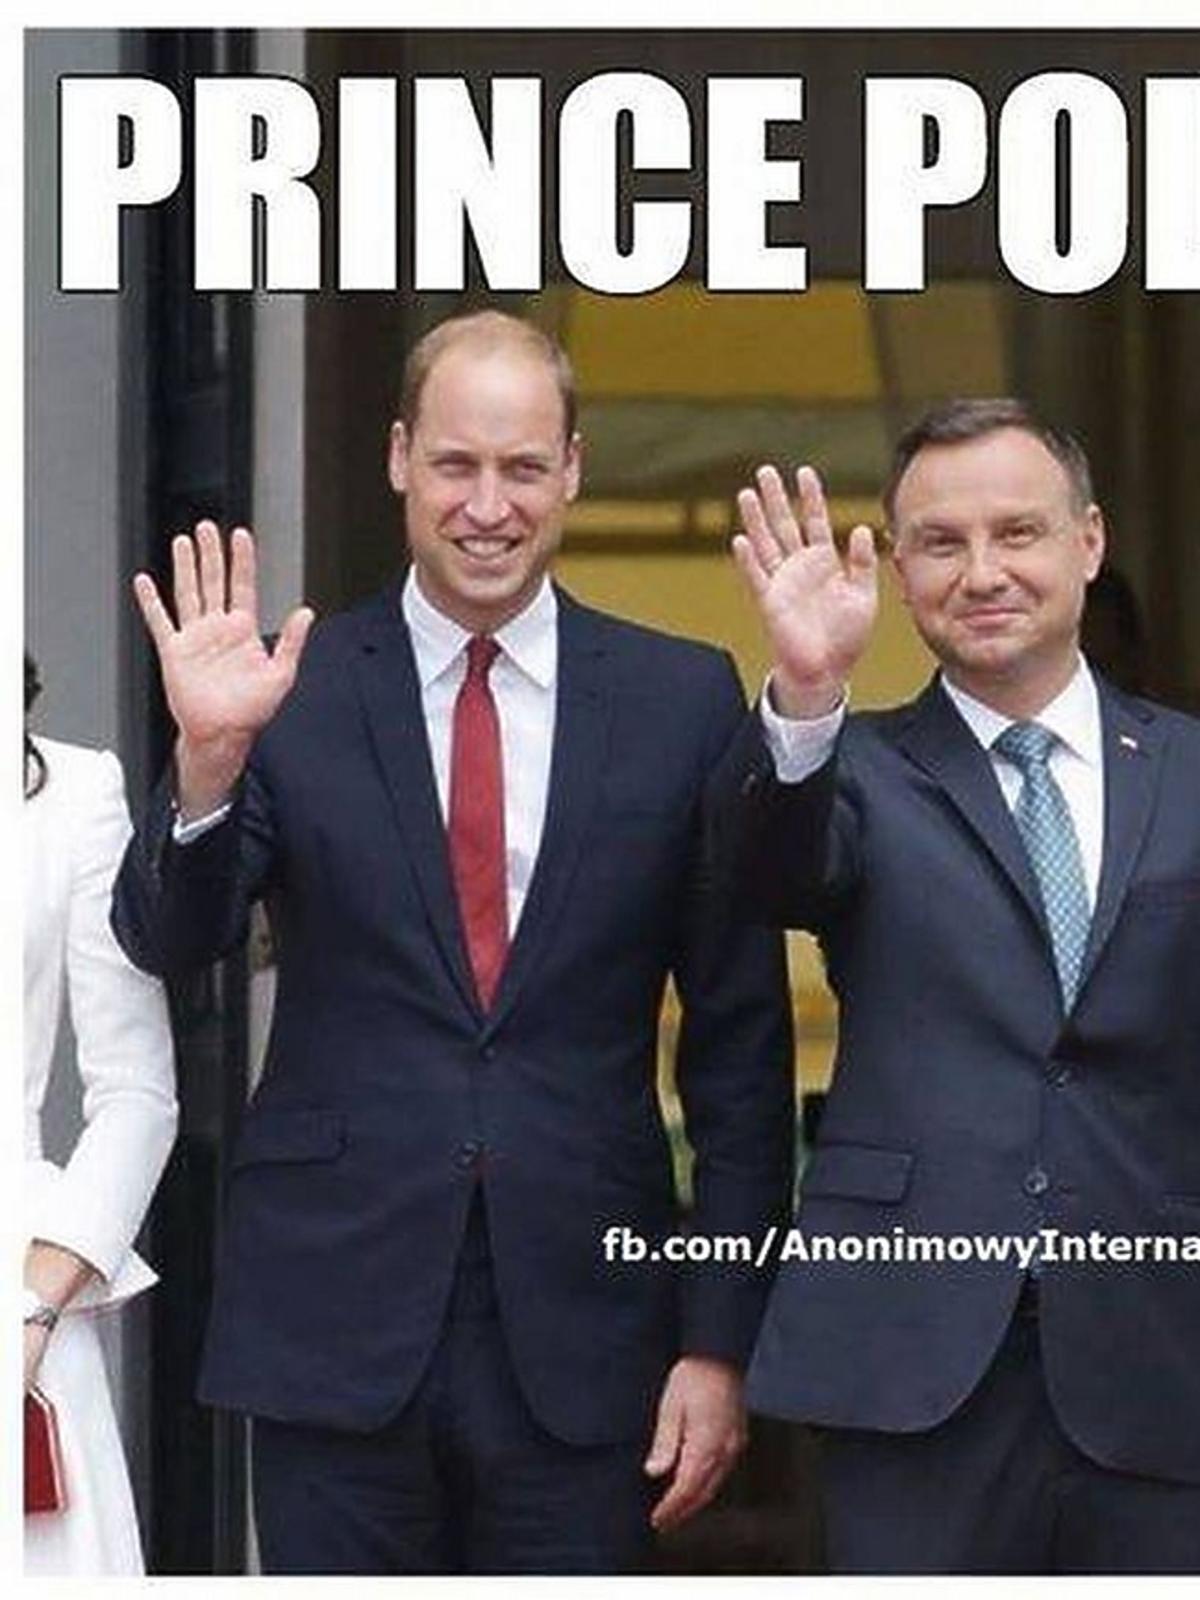 Memy z wizyty księżnej Kate i księcia Williama w Polsce